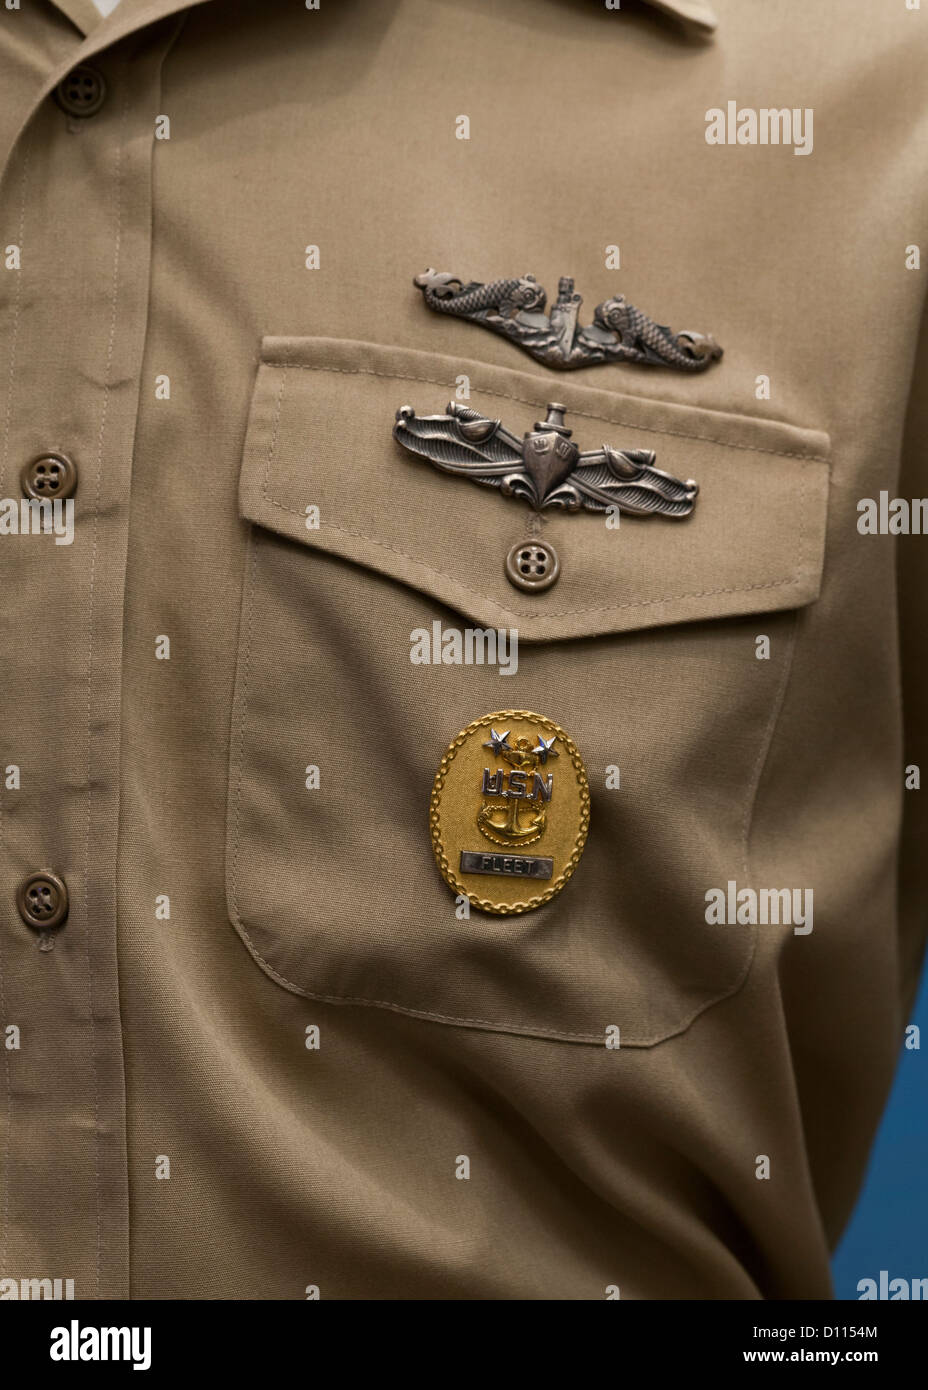 Officier de marine de médailles sur la tenue de service uniforme kaki Banque D'Images